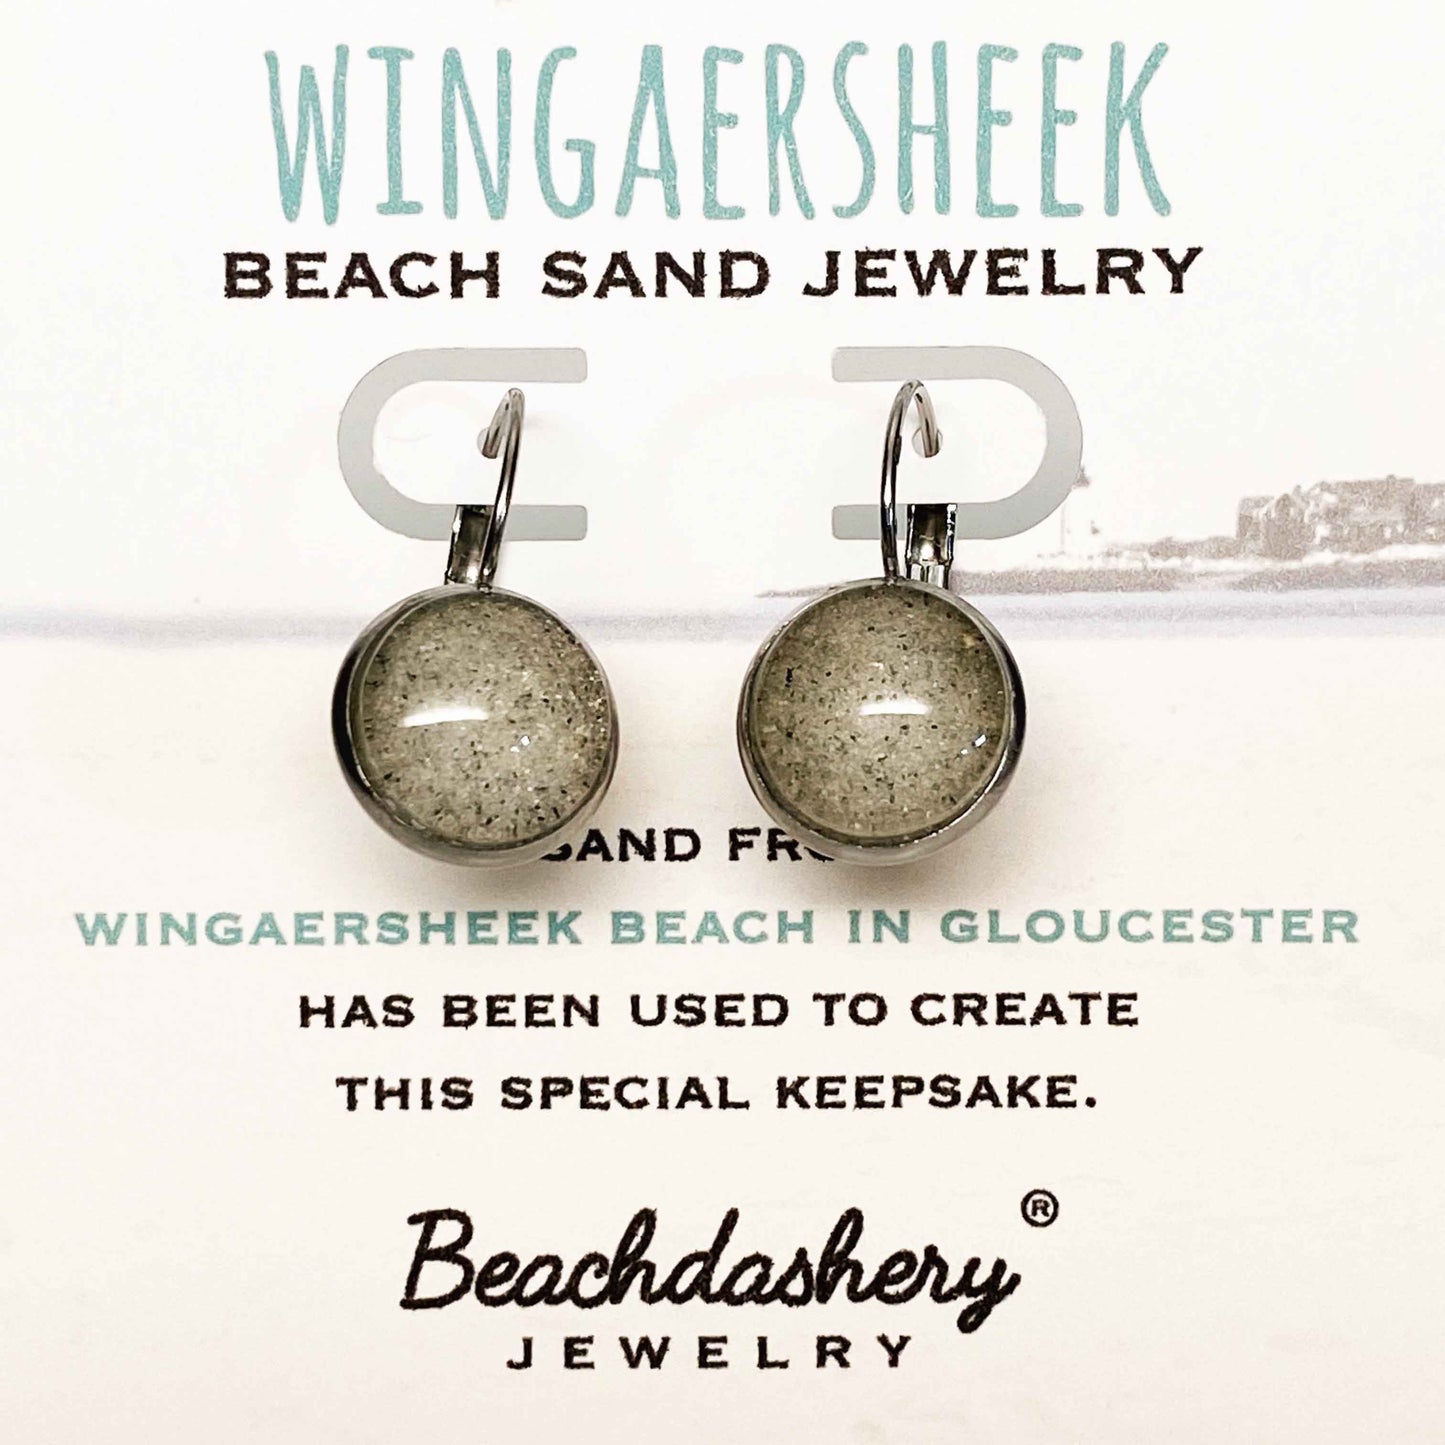 Load image into Gallery viewer, Wingaersheek Beach Sand Jewelry Beachdashery® Jewelry
